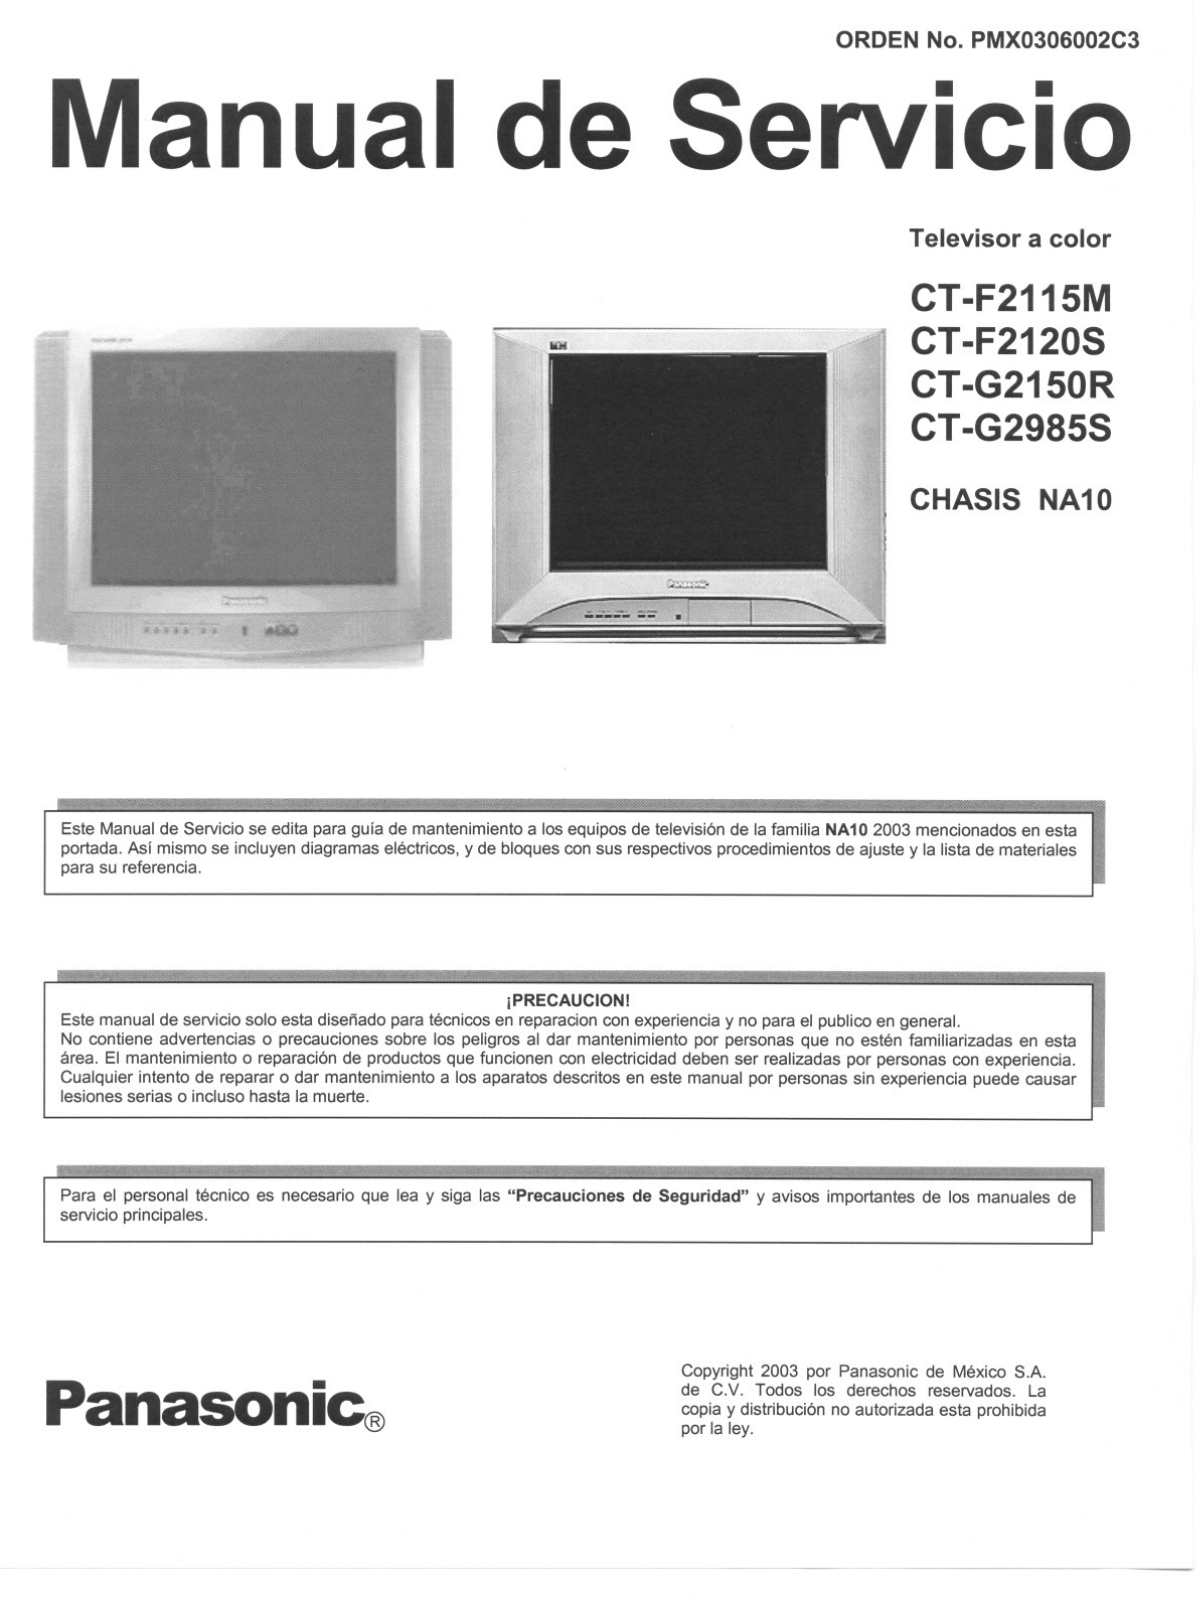 Panasonic CT -F2115M, CT-F2120S, CT-G2150R, CT -G2985S Service Manual